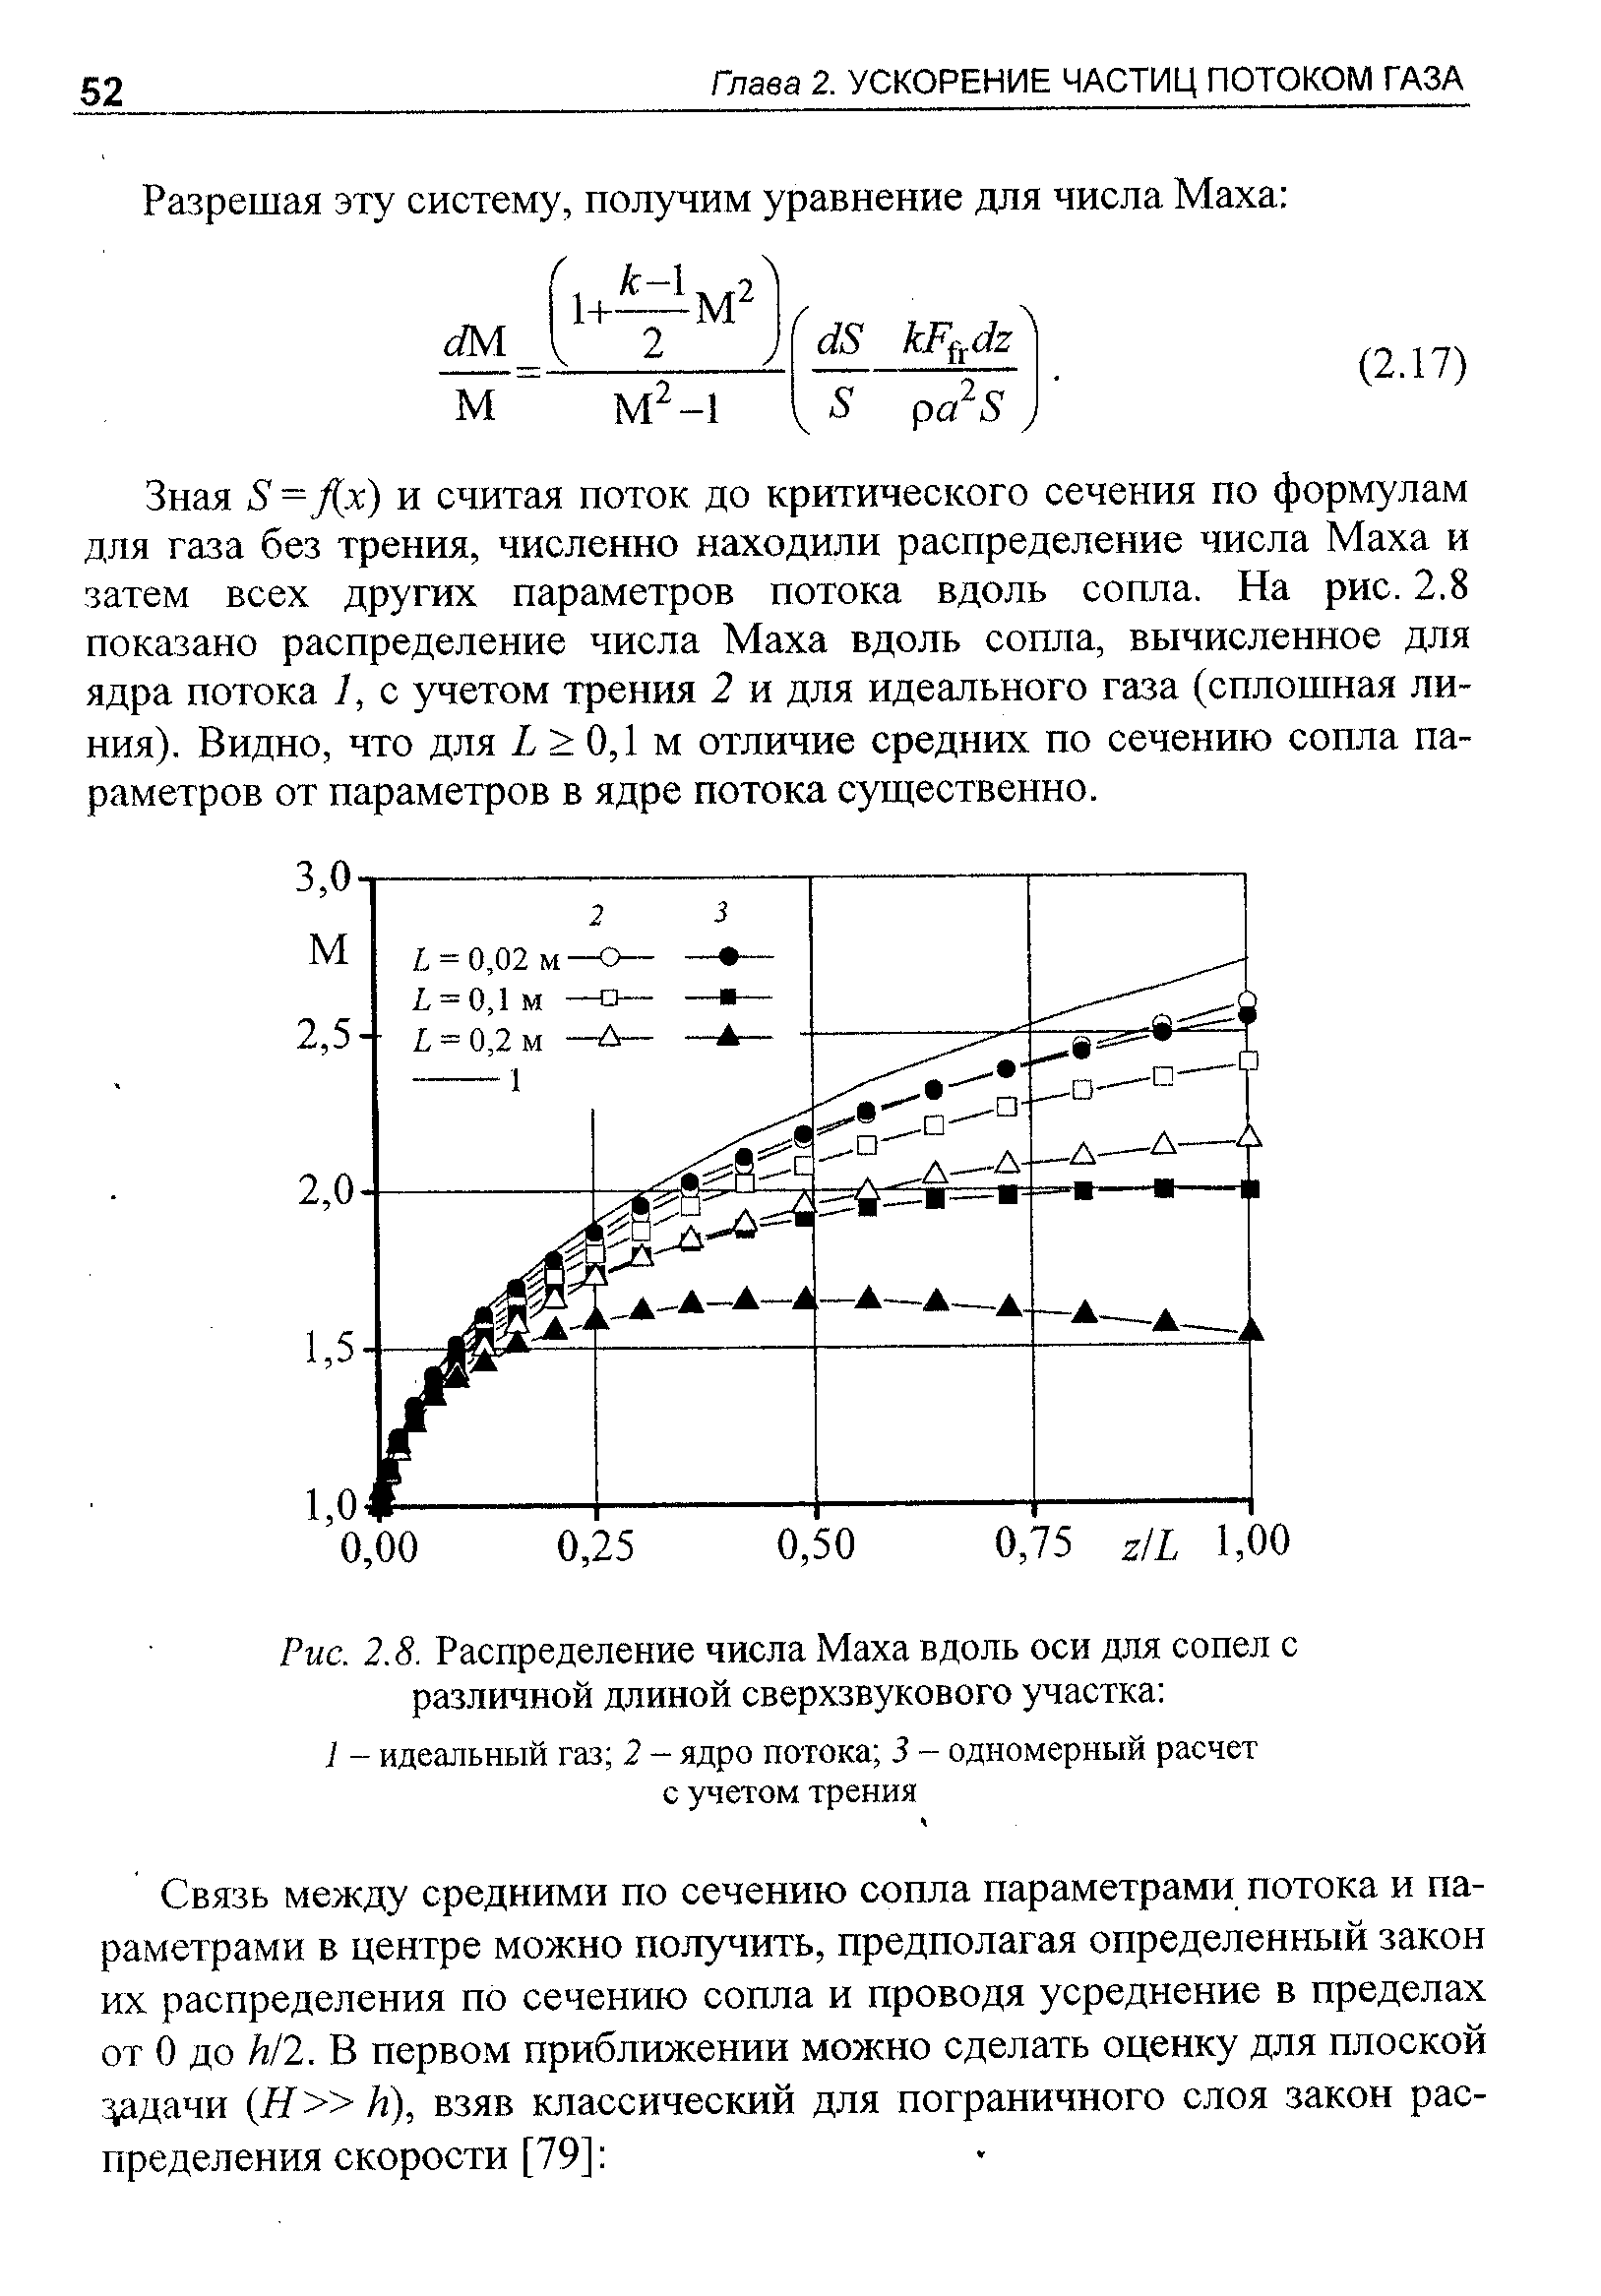 Зная 8 = Дх) и считая поток до критического сечения по формулам для газа без трения, численно находили распределение числа Маха и затем всех других параметров потока вдоль сопла. На рис. 2.8 показано распределение числа Маха вдоль сопла, вычисленное для ядра потока 1, с учетом трения 2 и для идеального газа (сплошная линия). Видно, что для X 0,1 м отличие средних по сечению сопла параметров от параметров в ядре потока суш ественно.
